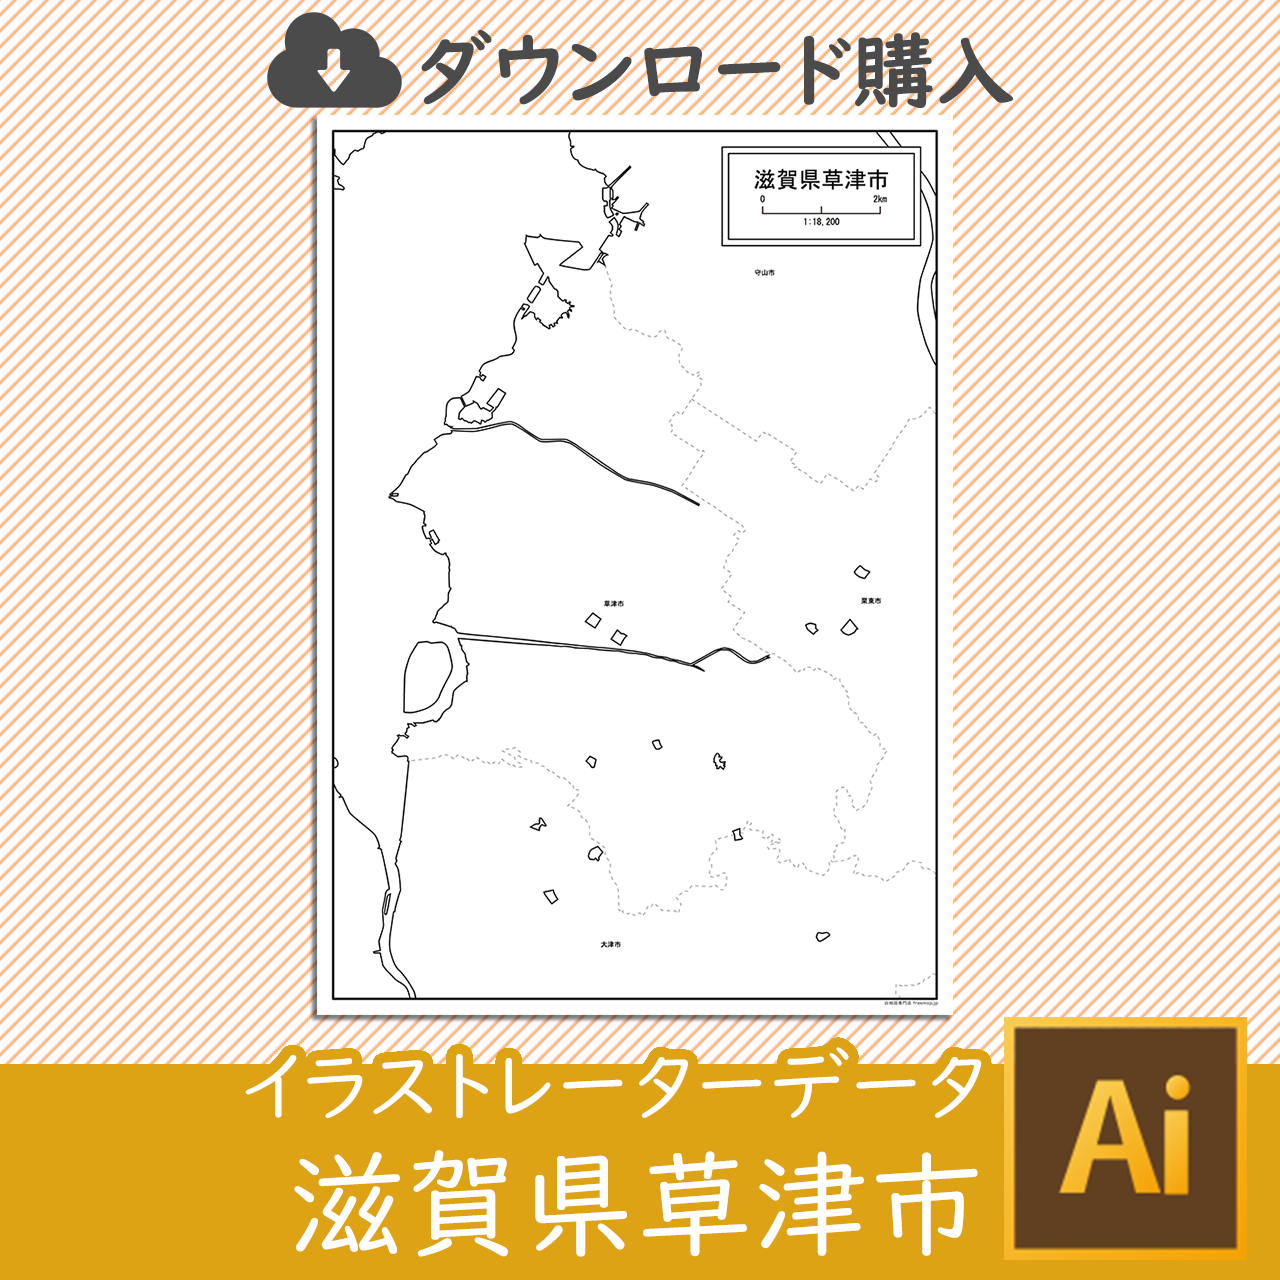 草津市のaiデータのサムネイル画像